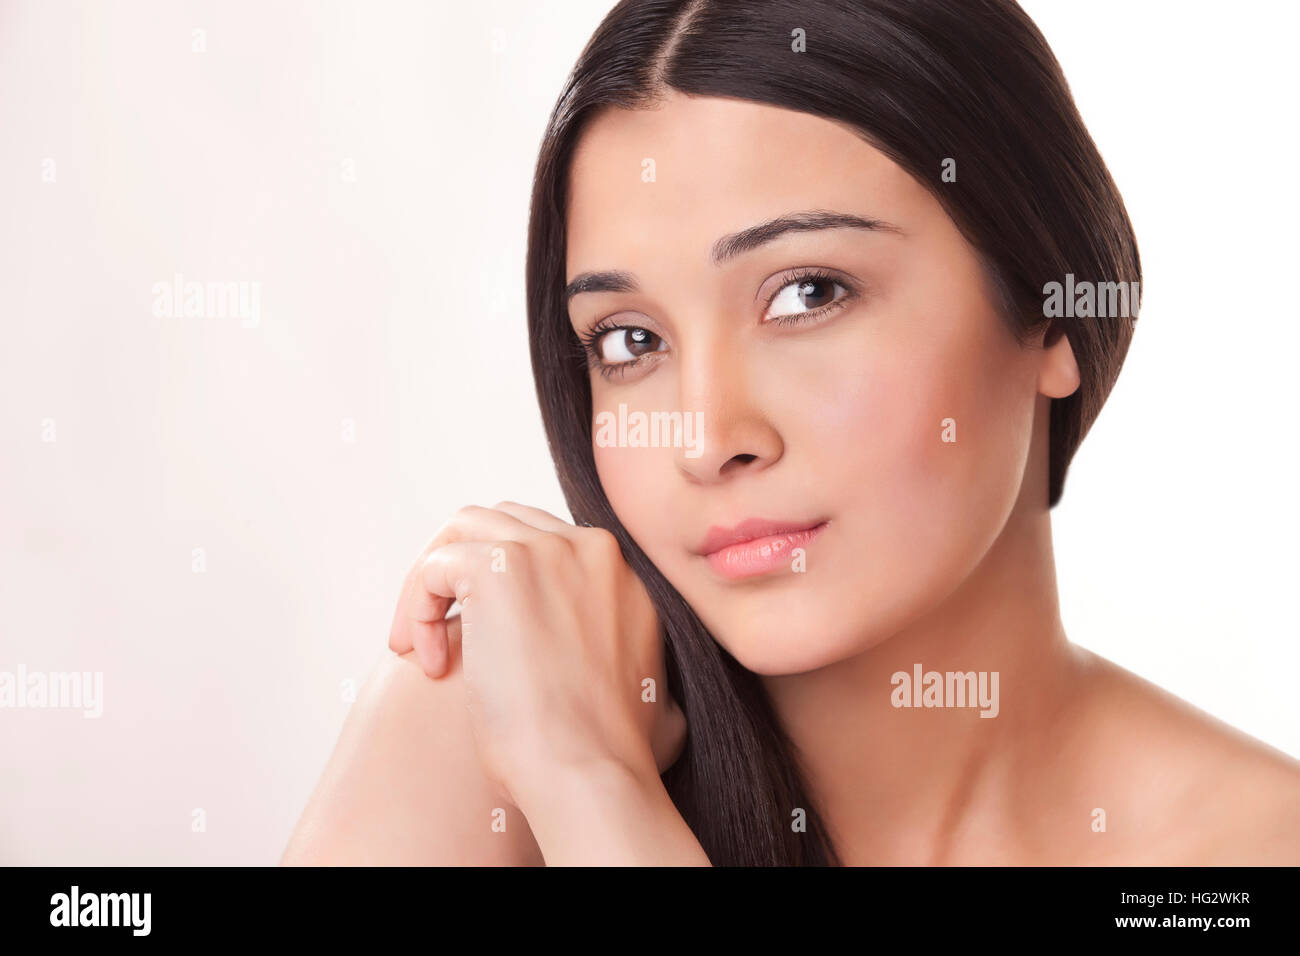 Porträt der schönen jungen Frau Stockfoto